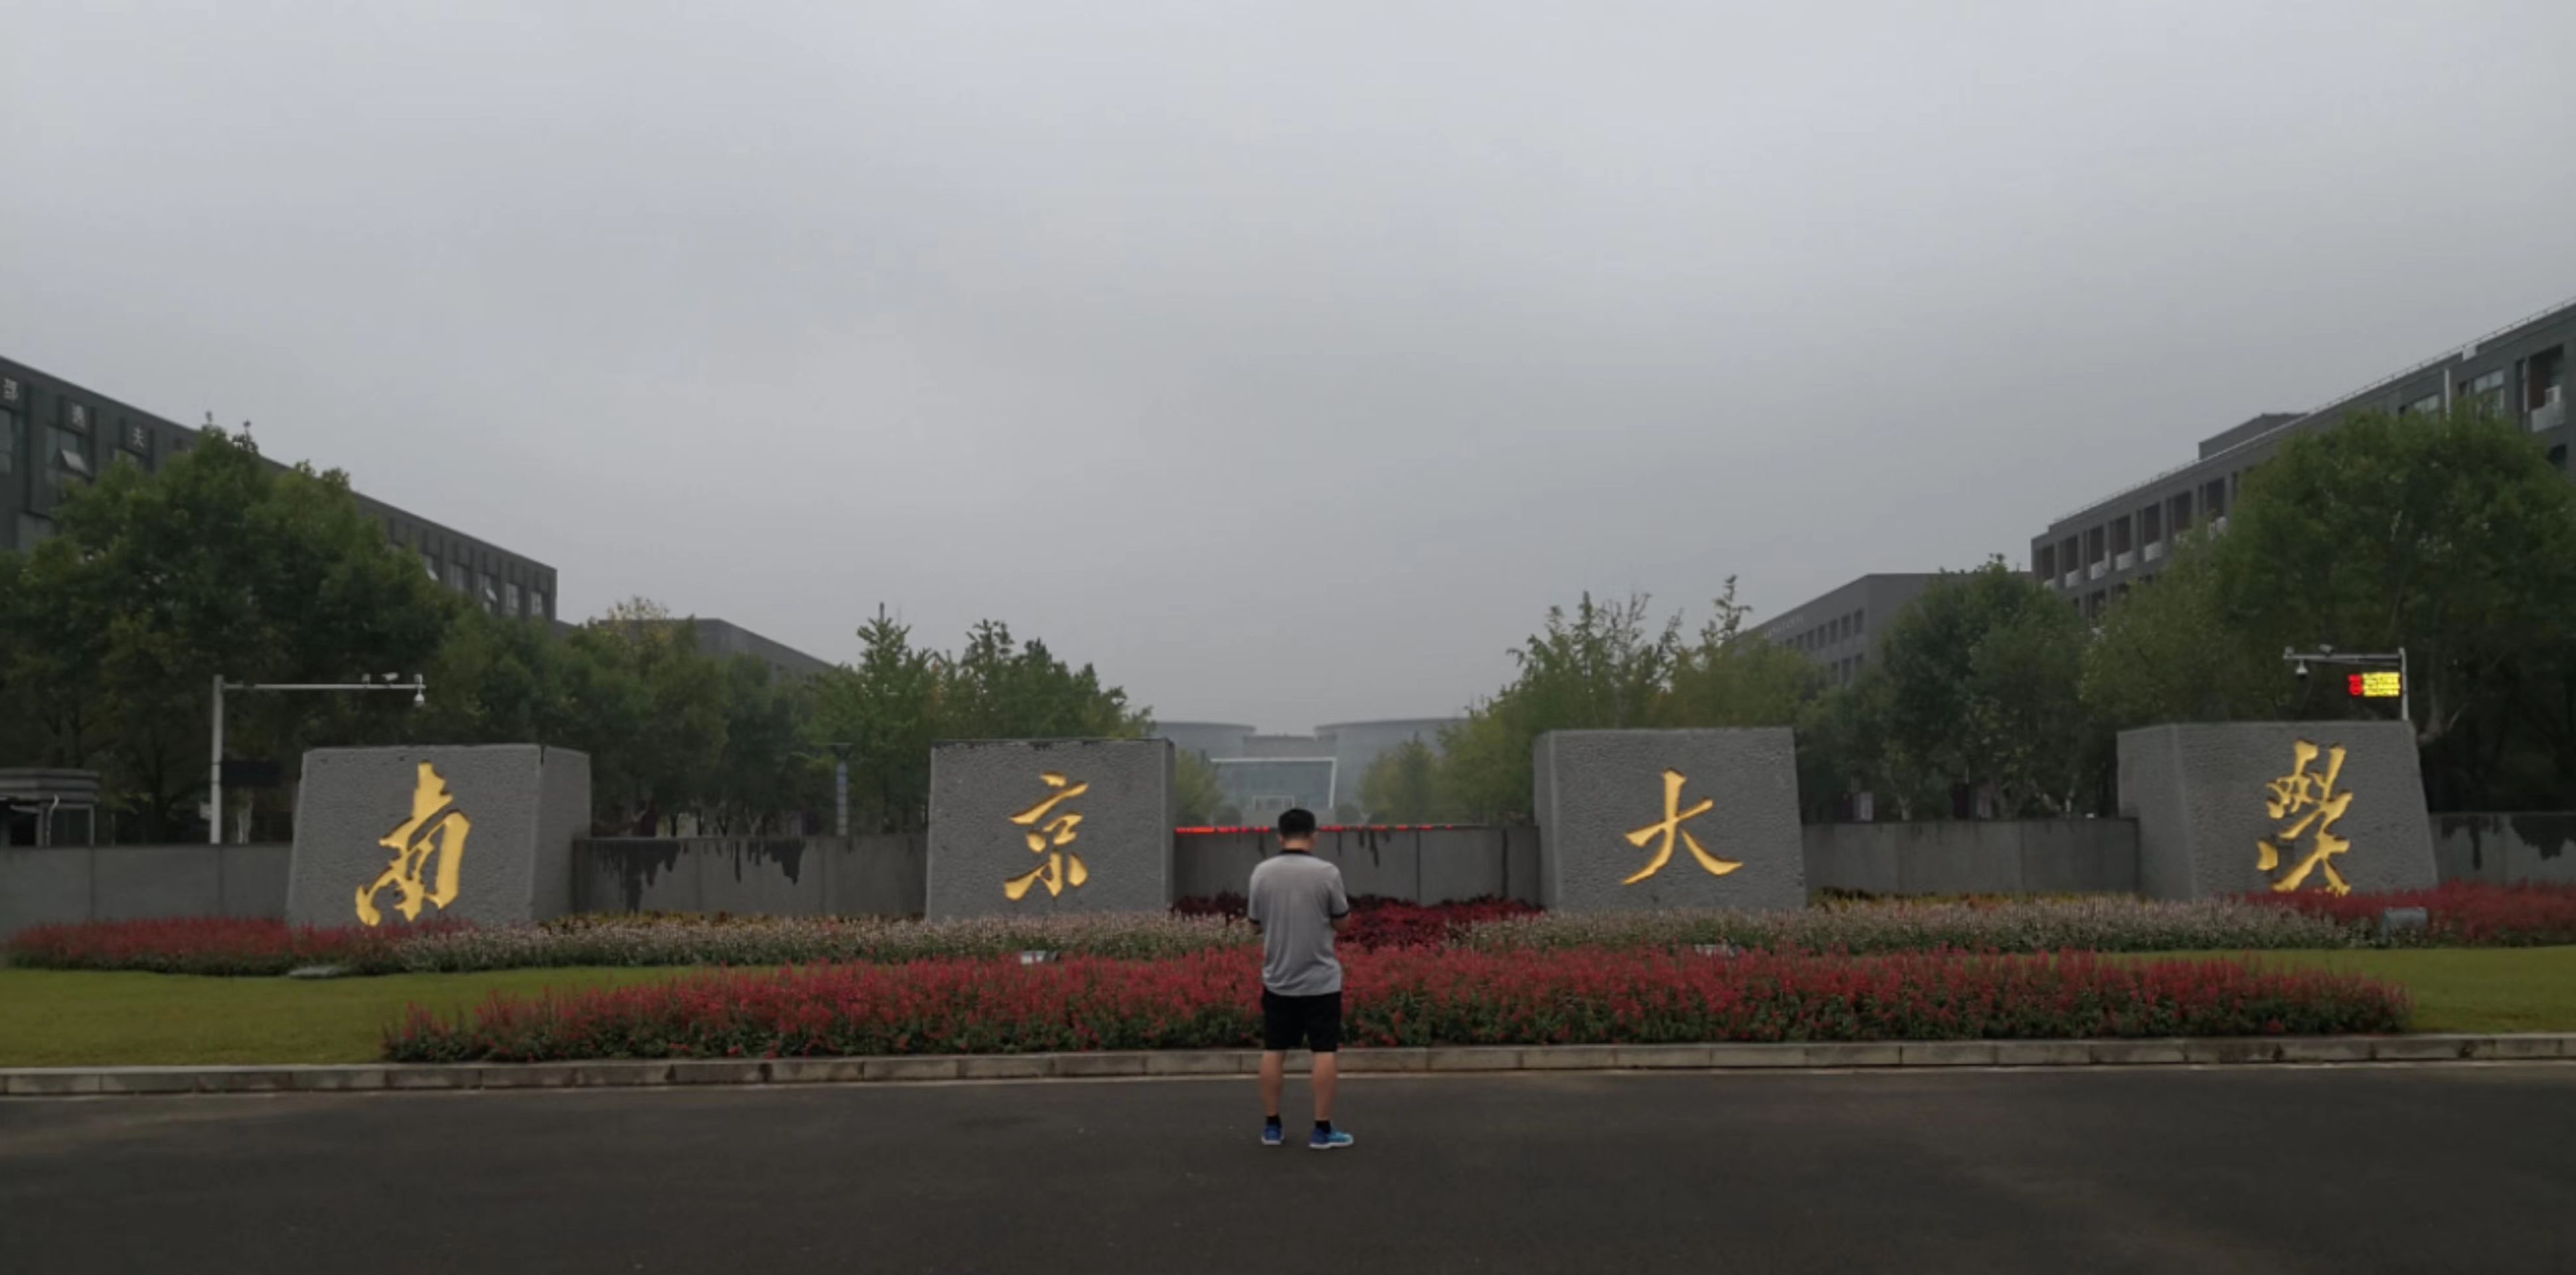 南京大学仙林校区图书馆 南京大学是由原 国立中央大学、金陵大学合并建立 历史上曾经名声大噪 文化历史